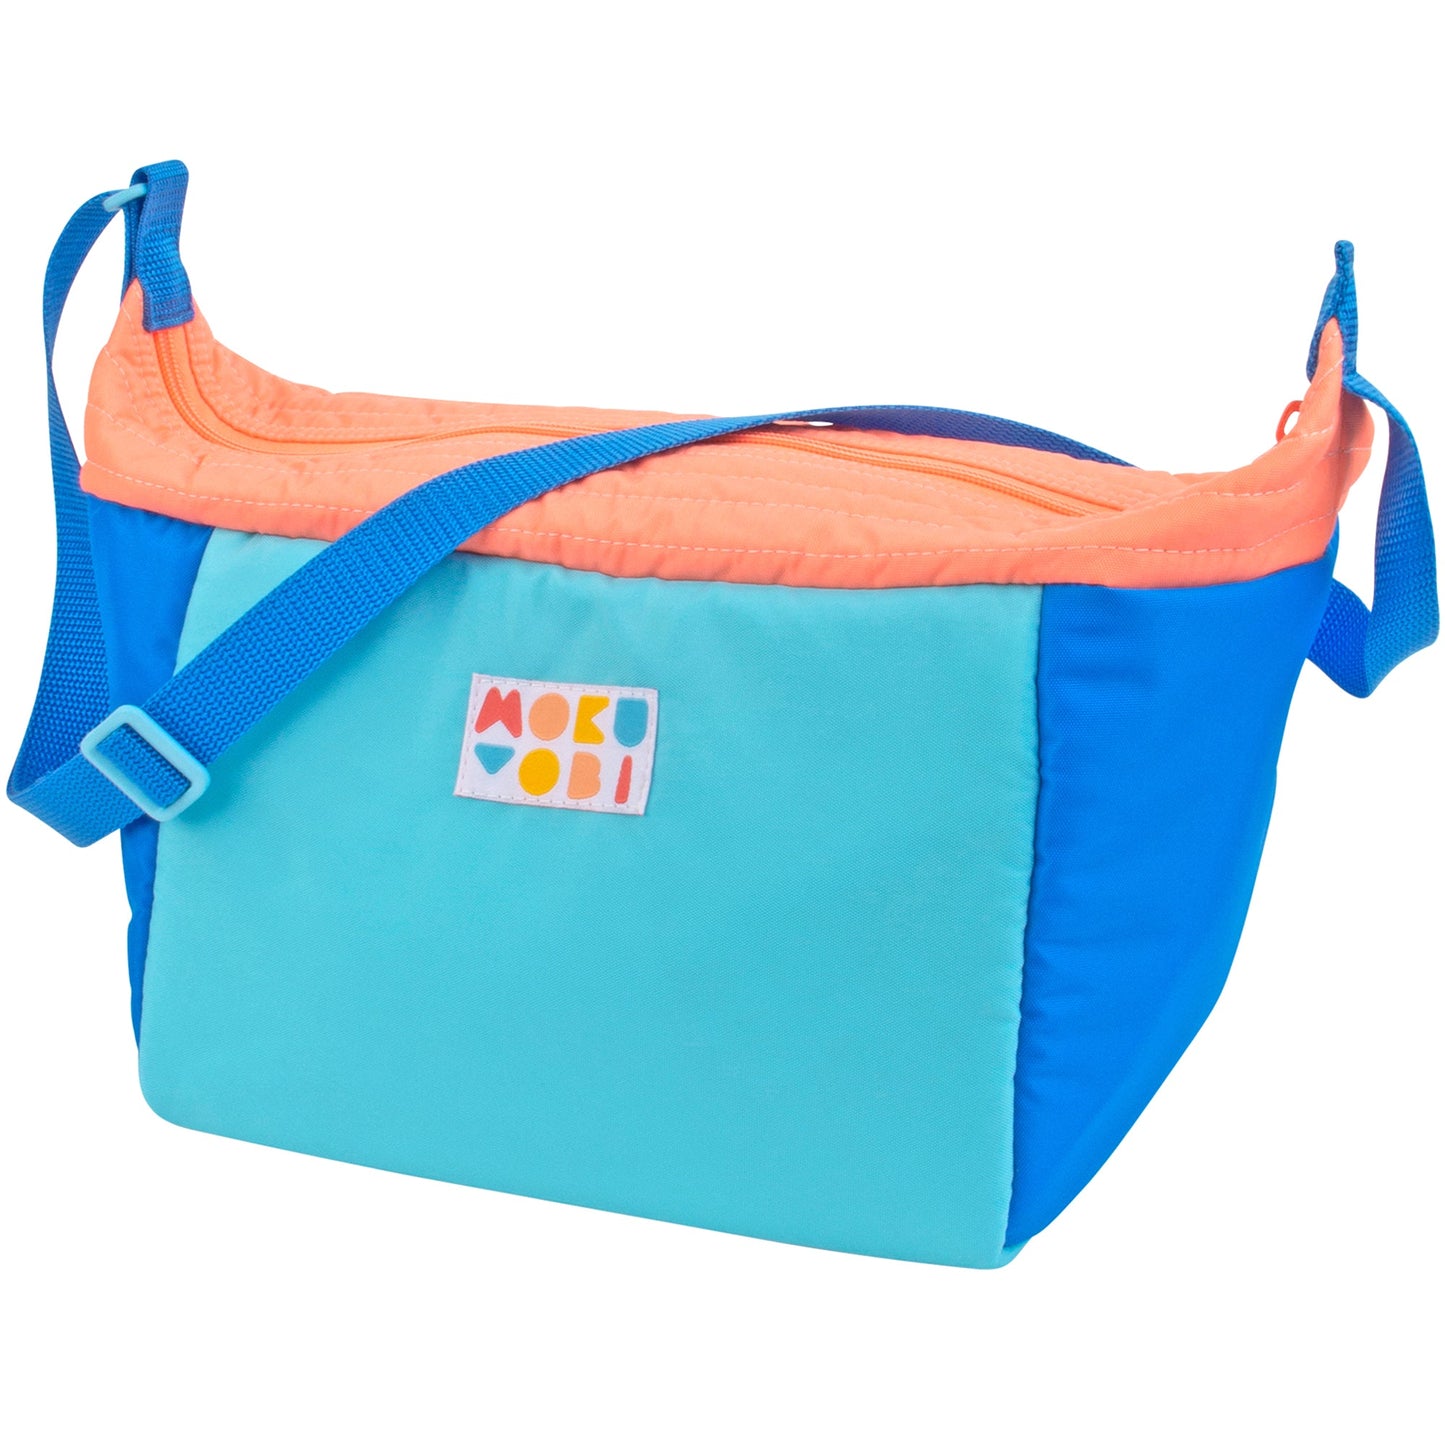 Mokuyobi: Cooler Bag